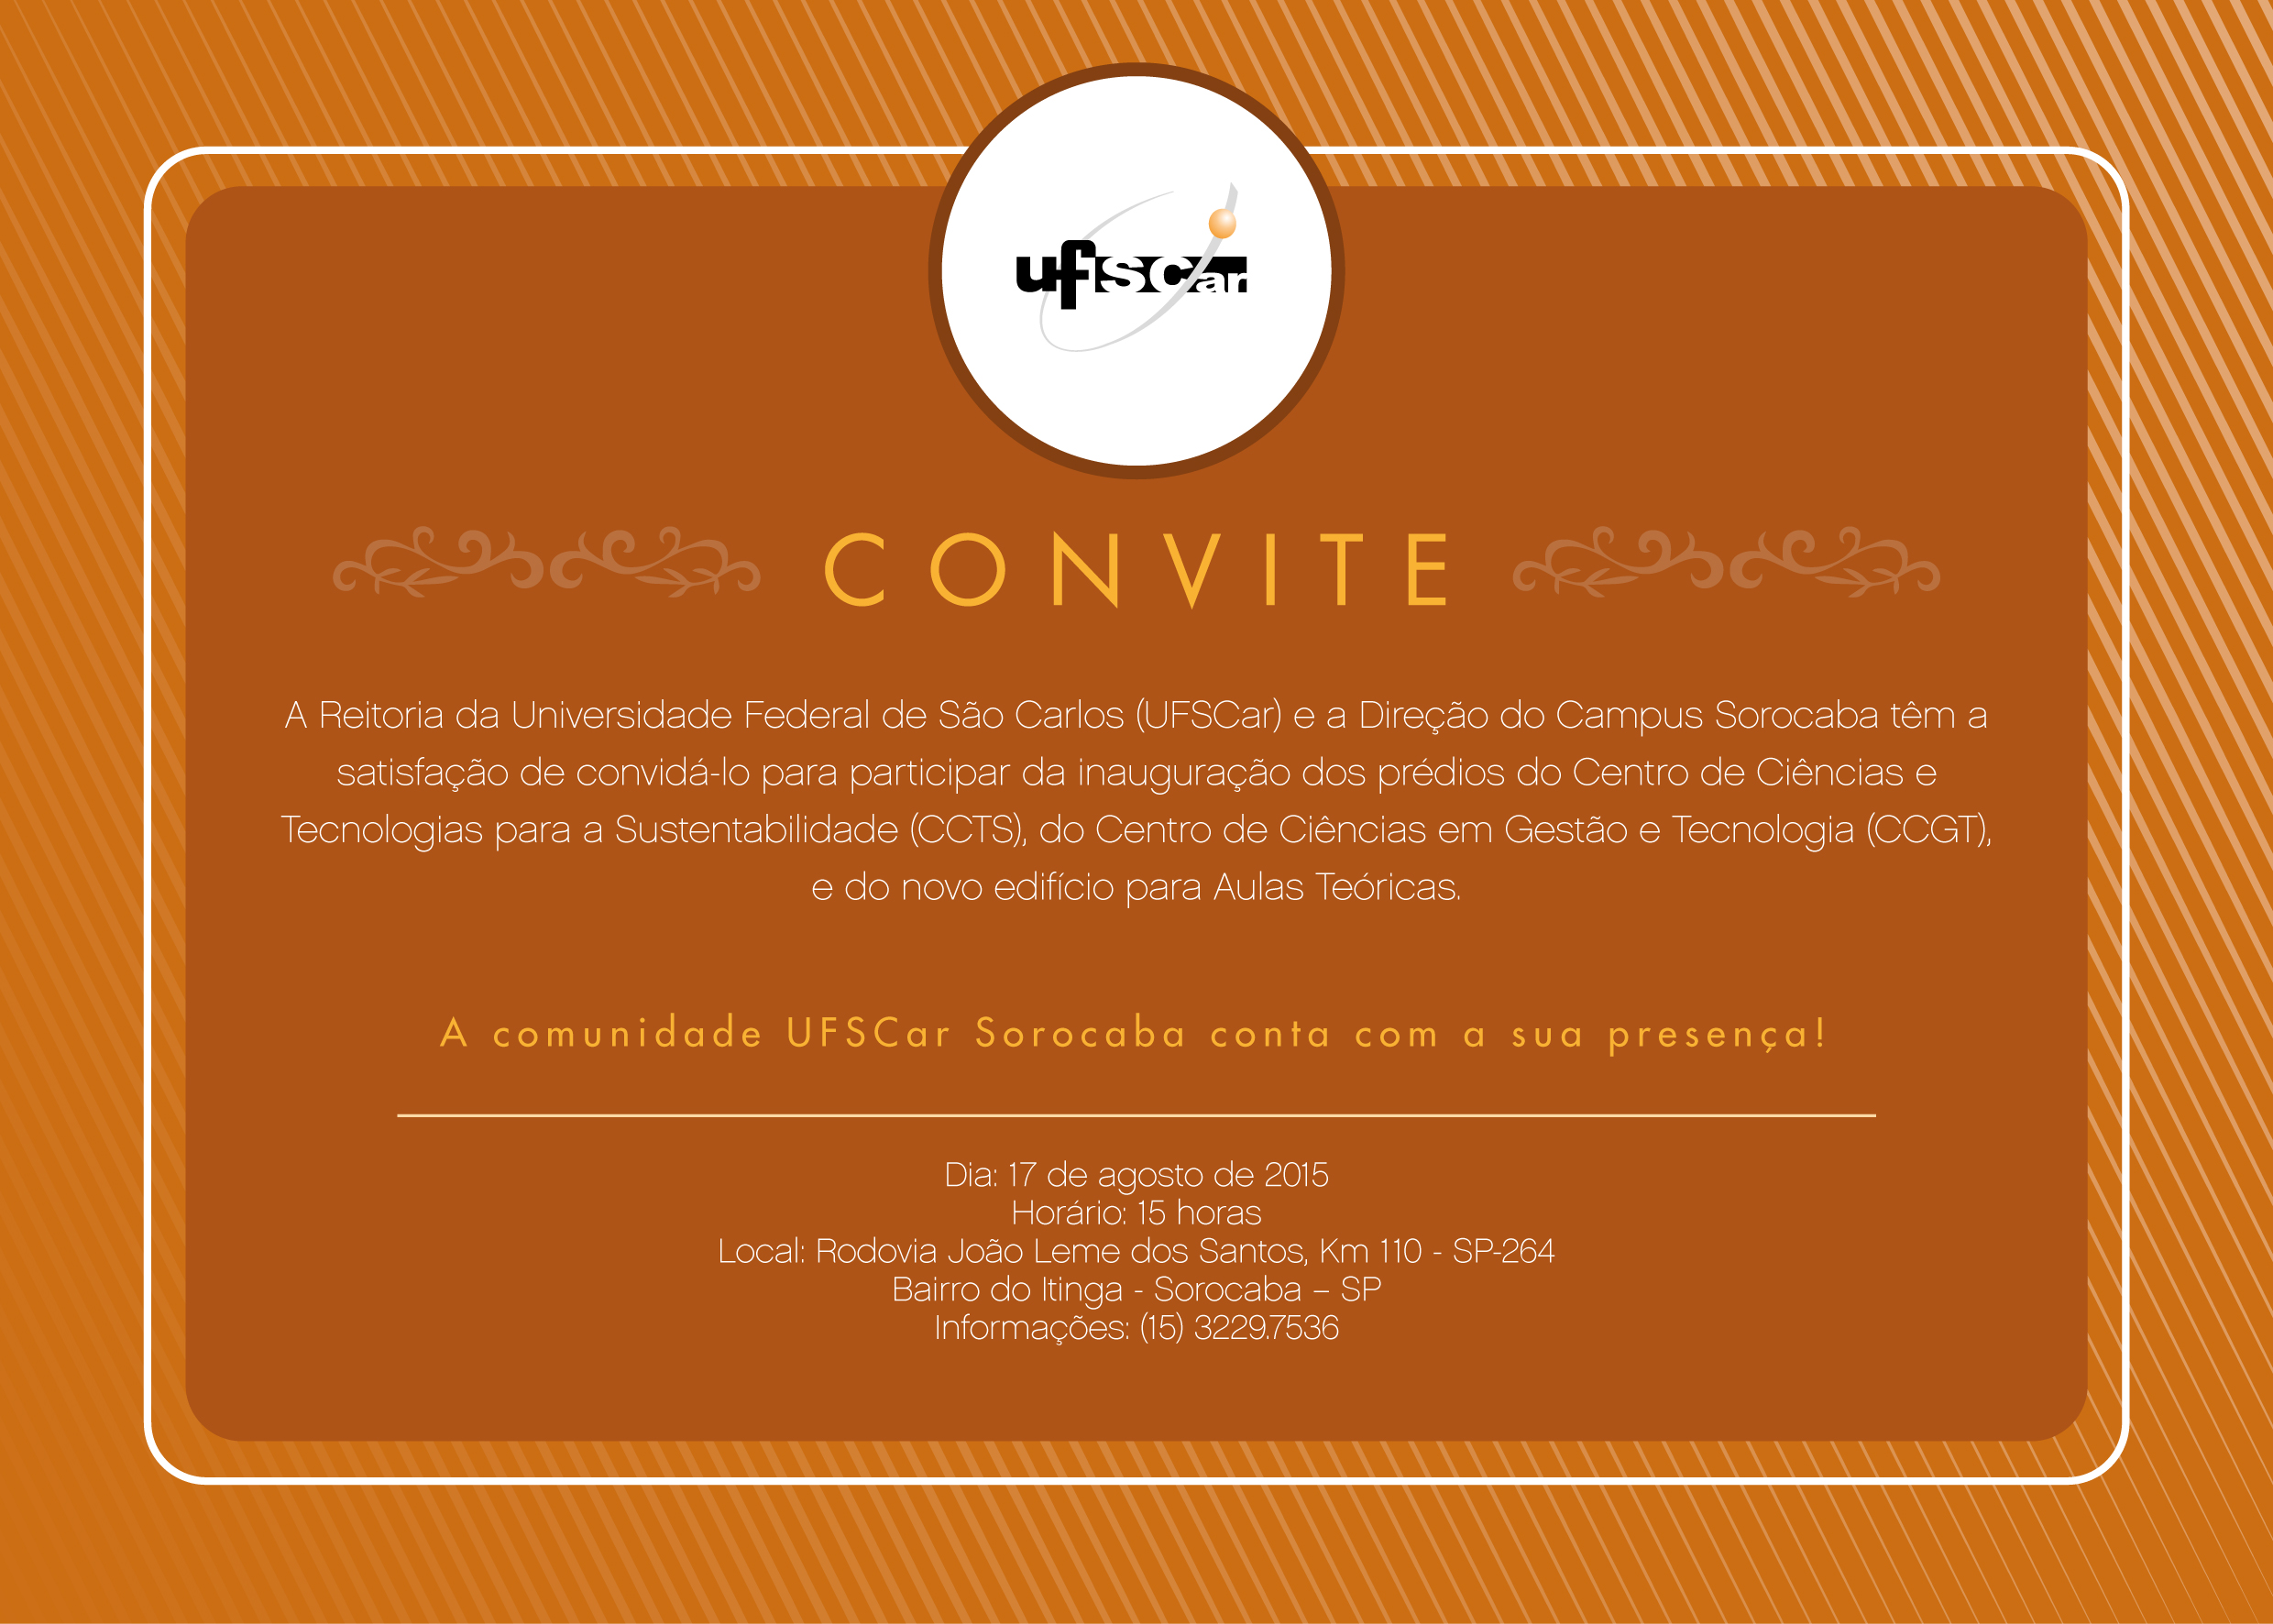 convite-01-01 (2).jpg